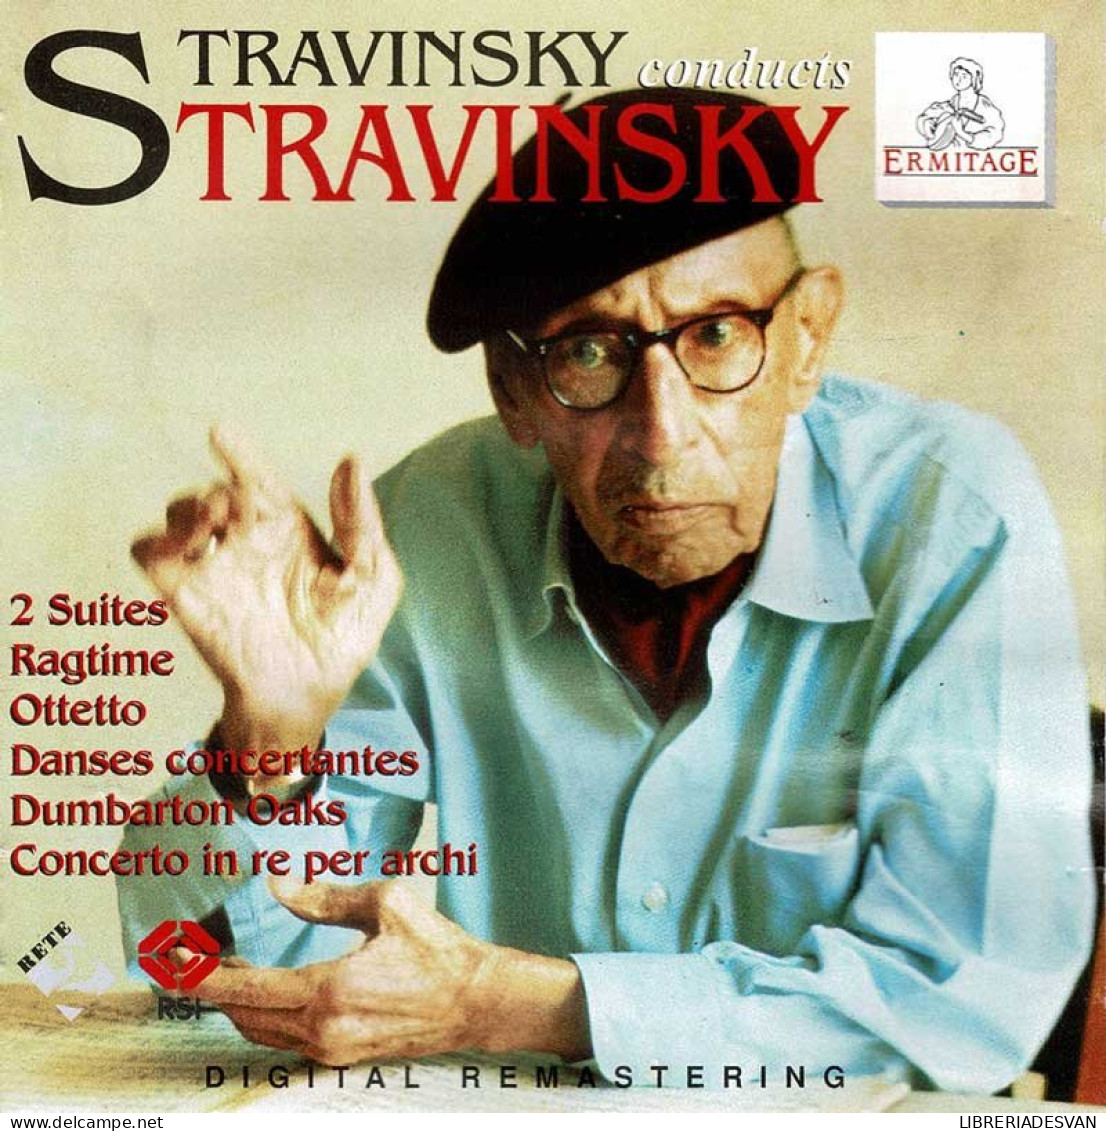 Igor Stravinsky - Stravinsky Conducts Stravinsky. CD - Classical